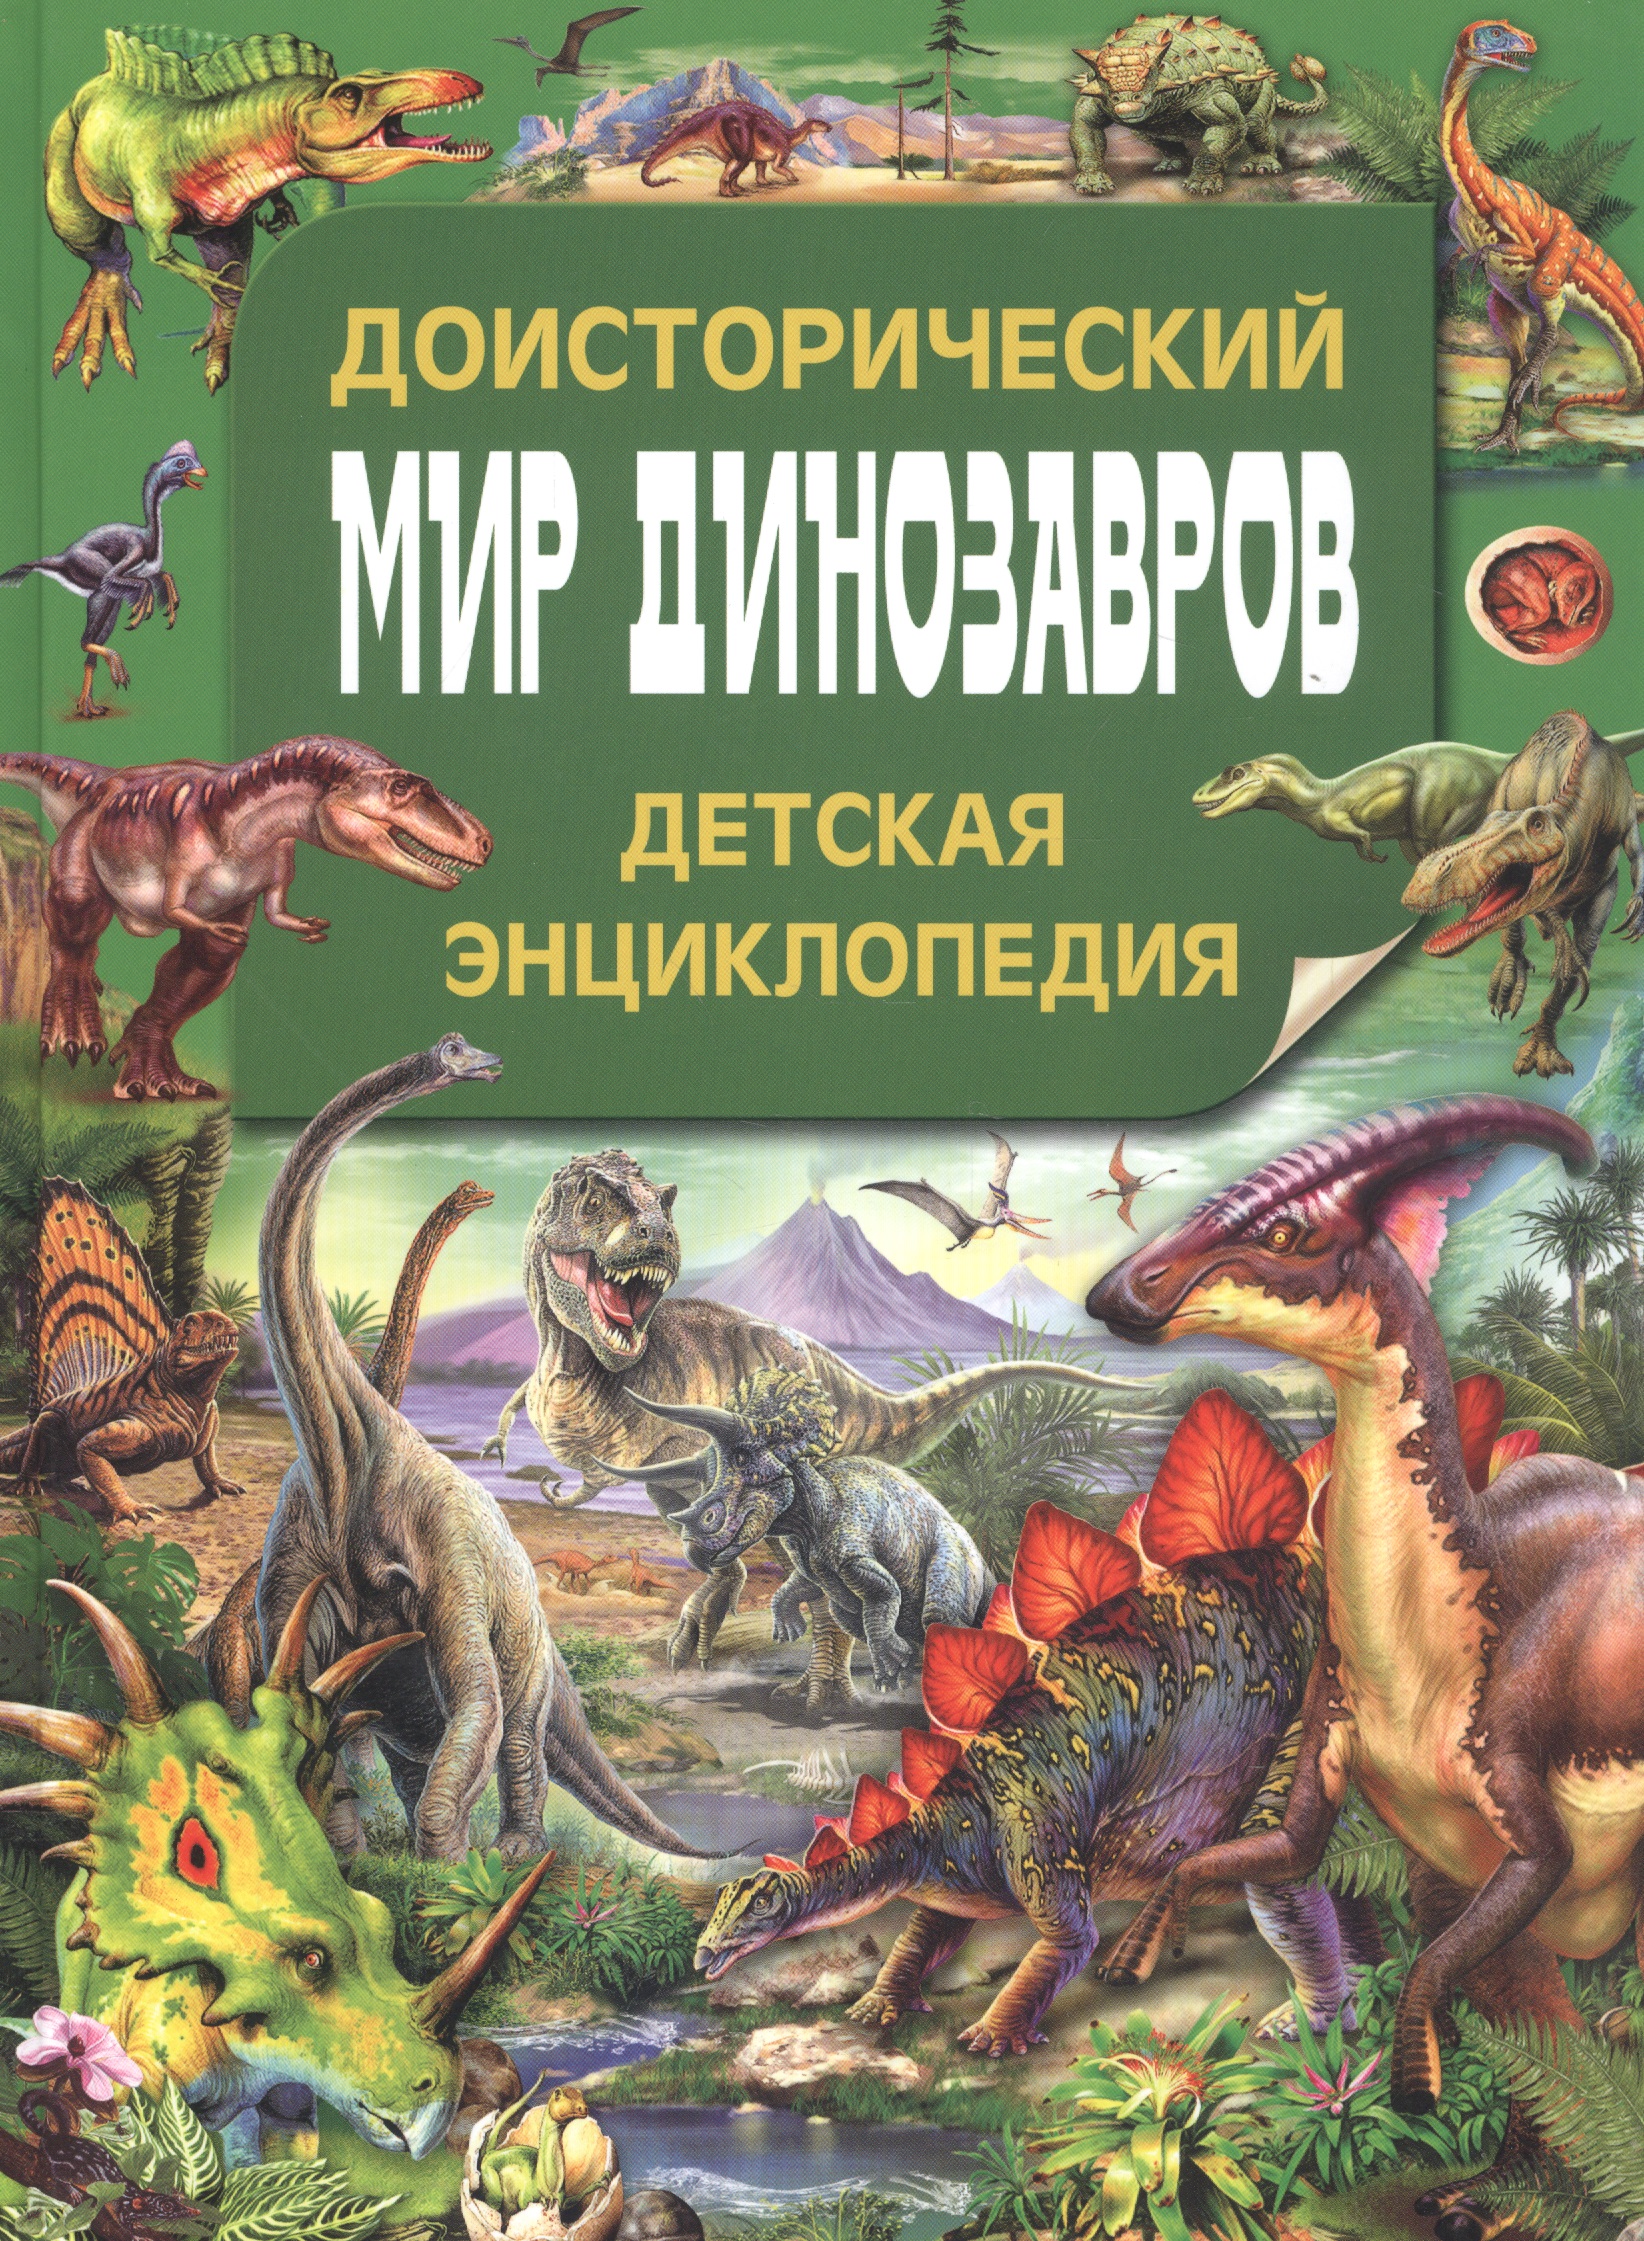 калугина л доисторический мир Доисторический мир динозавров. Детская энциклопедия